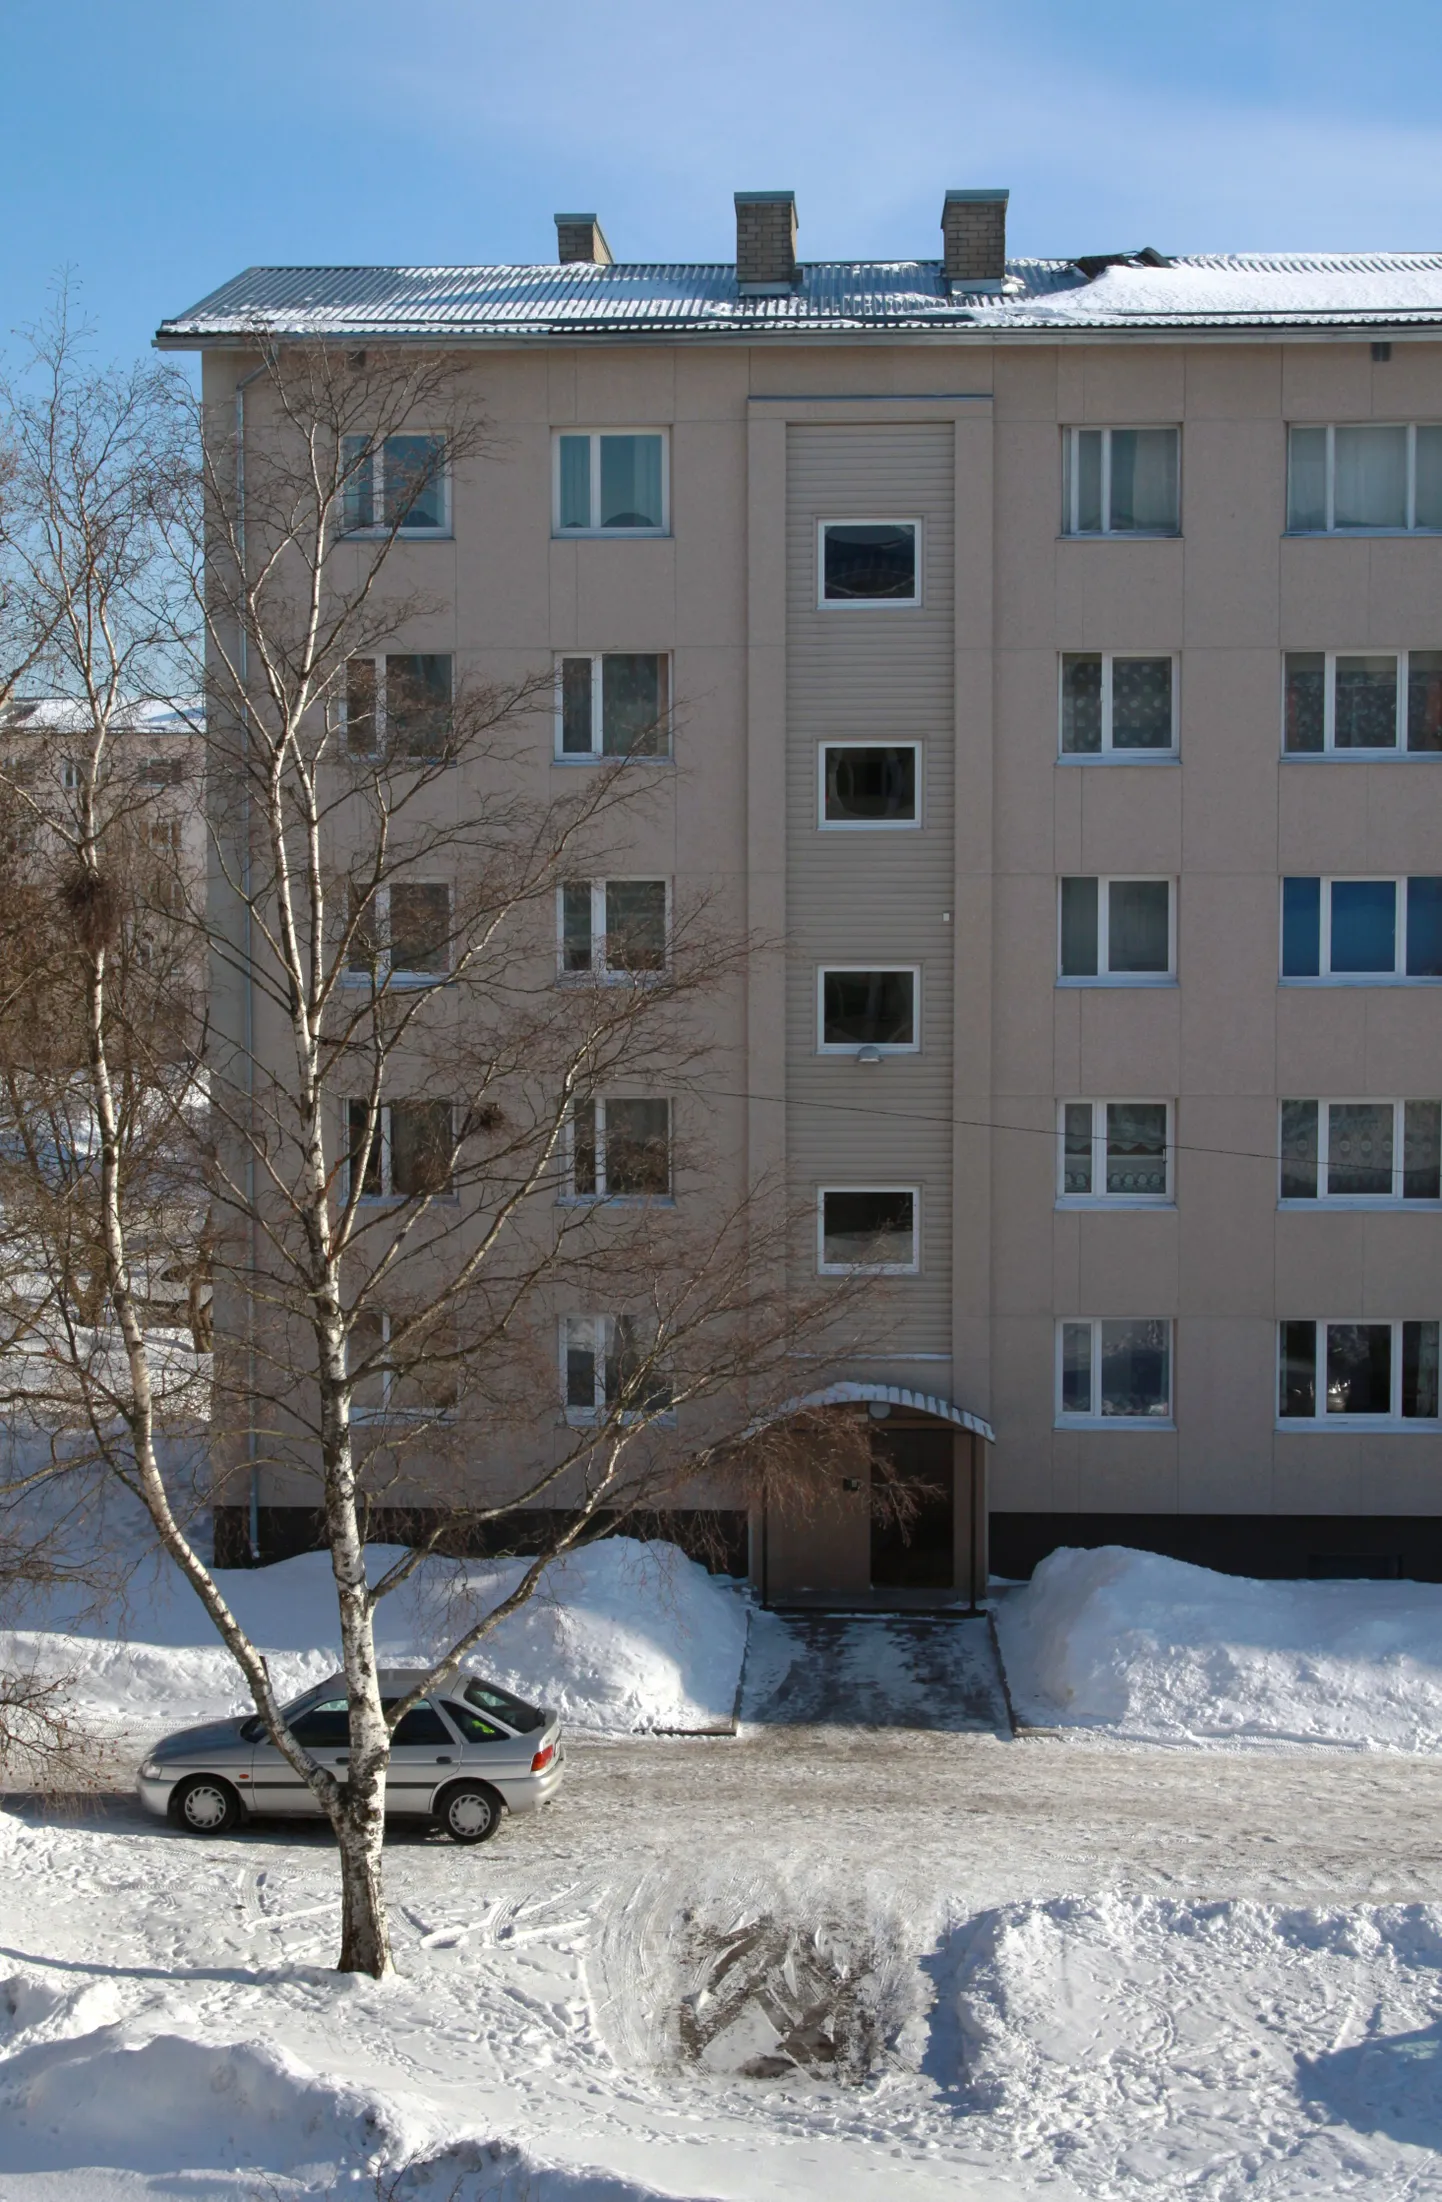 Tammsaare 34 majakatusele unustatud lumesahad.